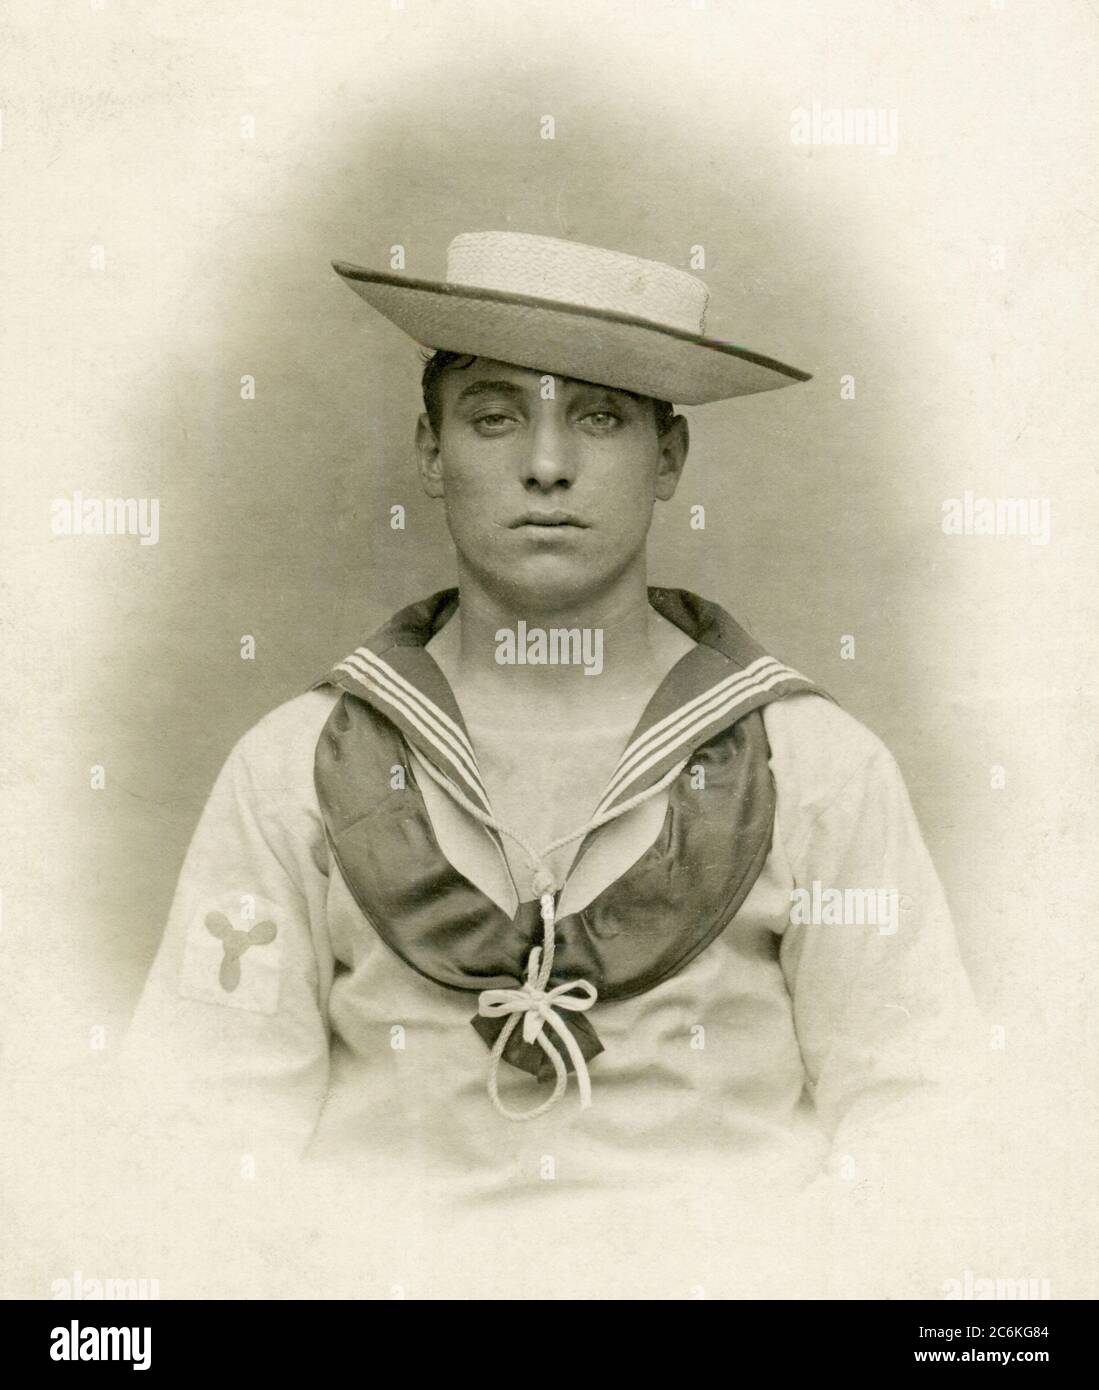 Un marin de la Marine royale victorienne portant un costume de marin tropical blanc et un chapeau sennett en paille. Il a un insigne de stoker sur sa manche. Vers 1900 Banque D'Images